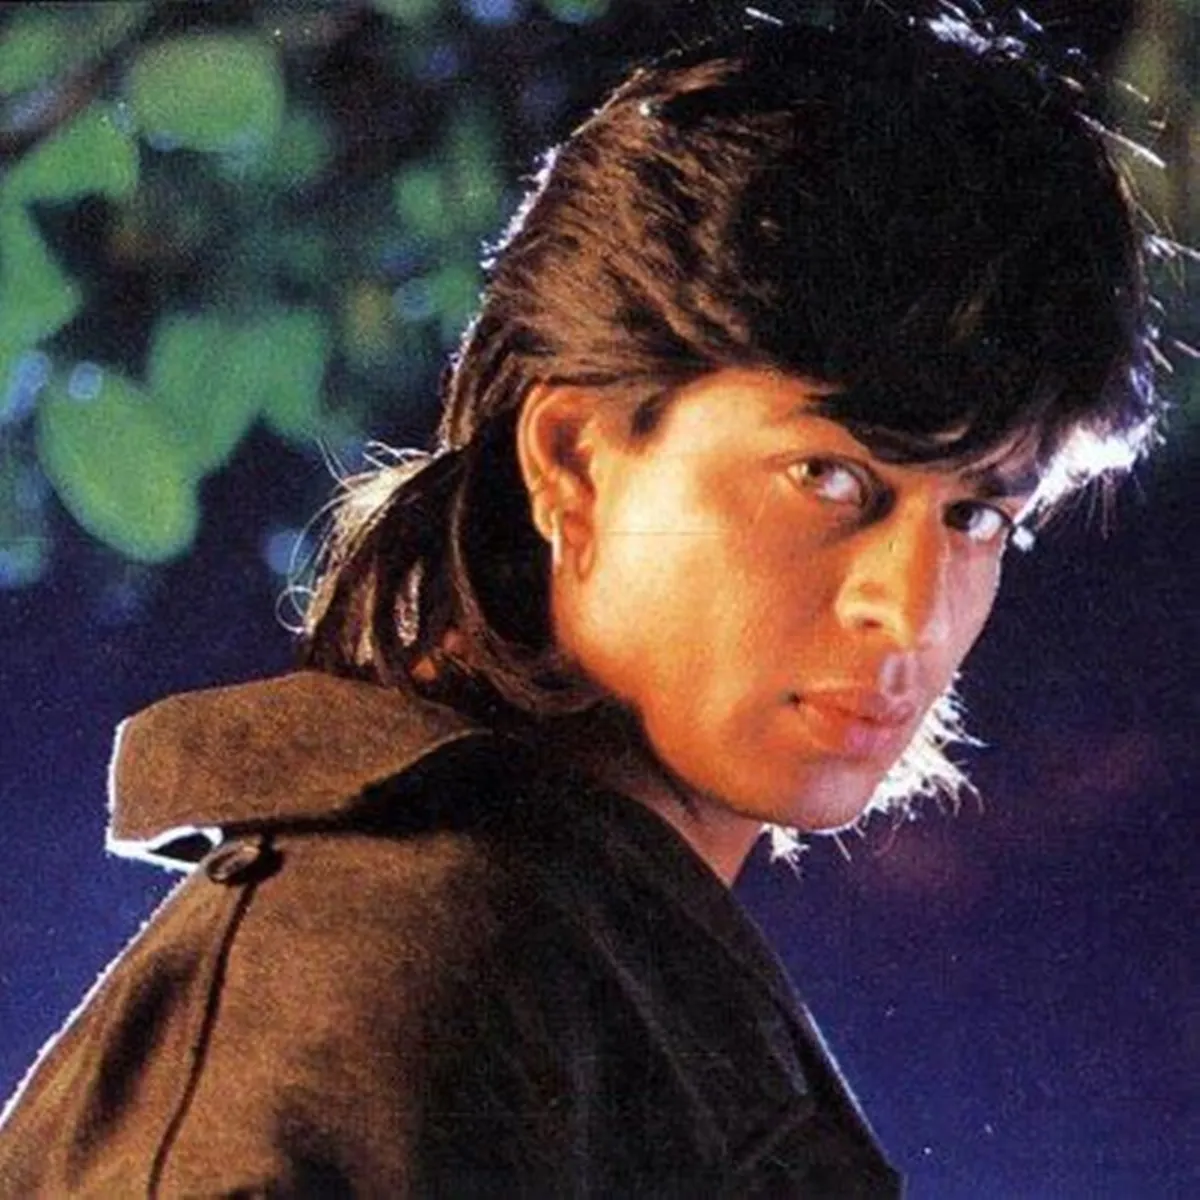 SRK #HairStyle #Ponytail | Hair styles, Ponytail, Shahrukh khan